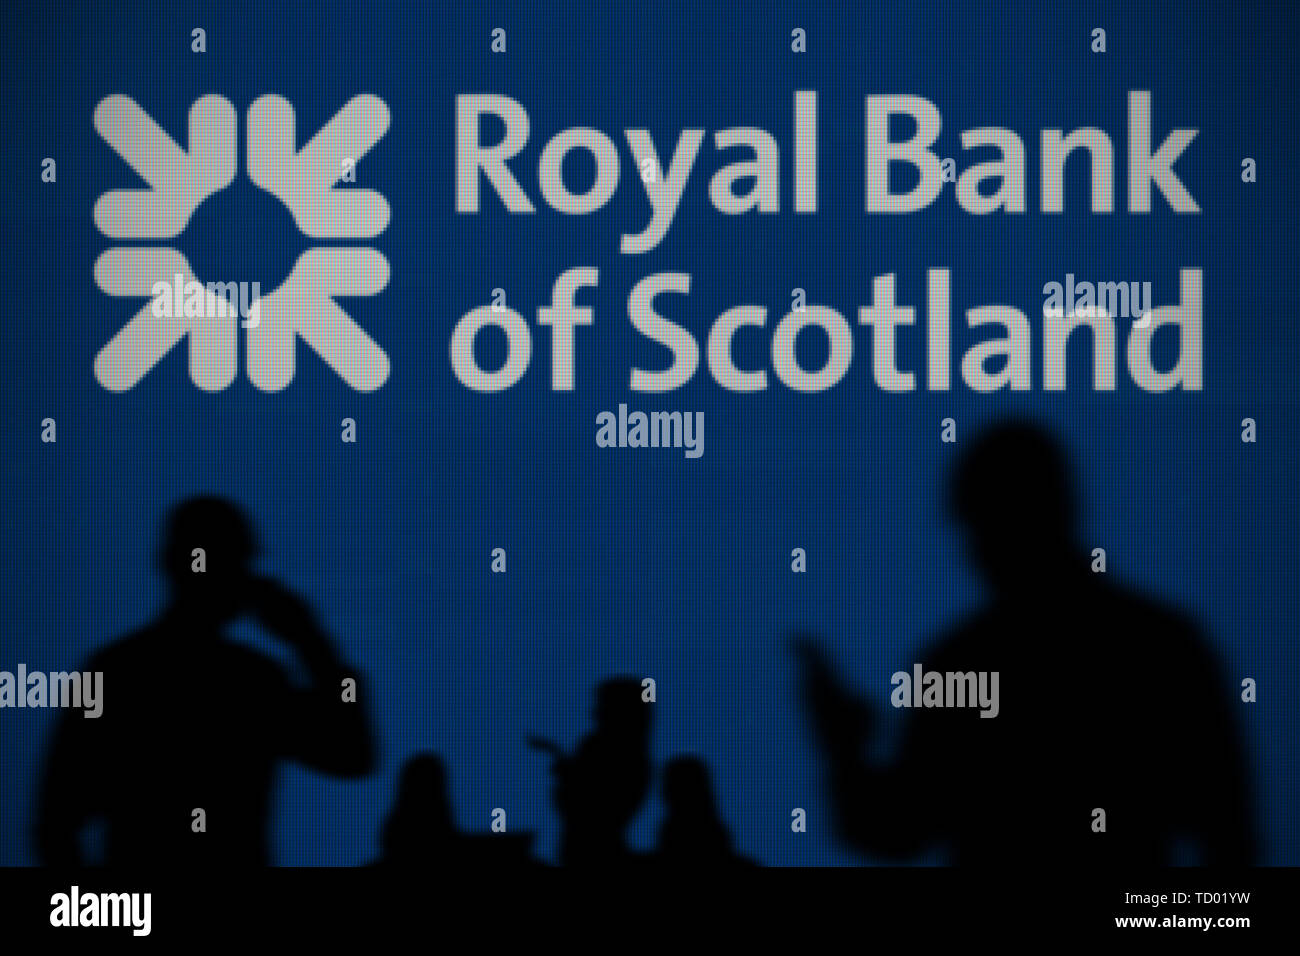 Le logo RBS est vu sur un écran LED à l'arrière-plan tandis qu'une personne utilise la silhouette d'un smartphone dans l'avant-plan (usage éditorial uniquement) Banque D'Images